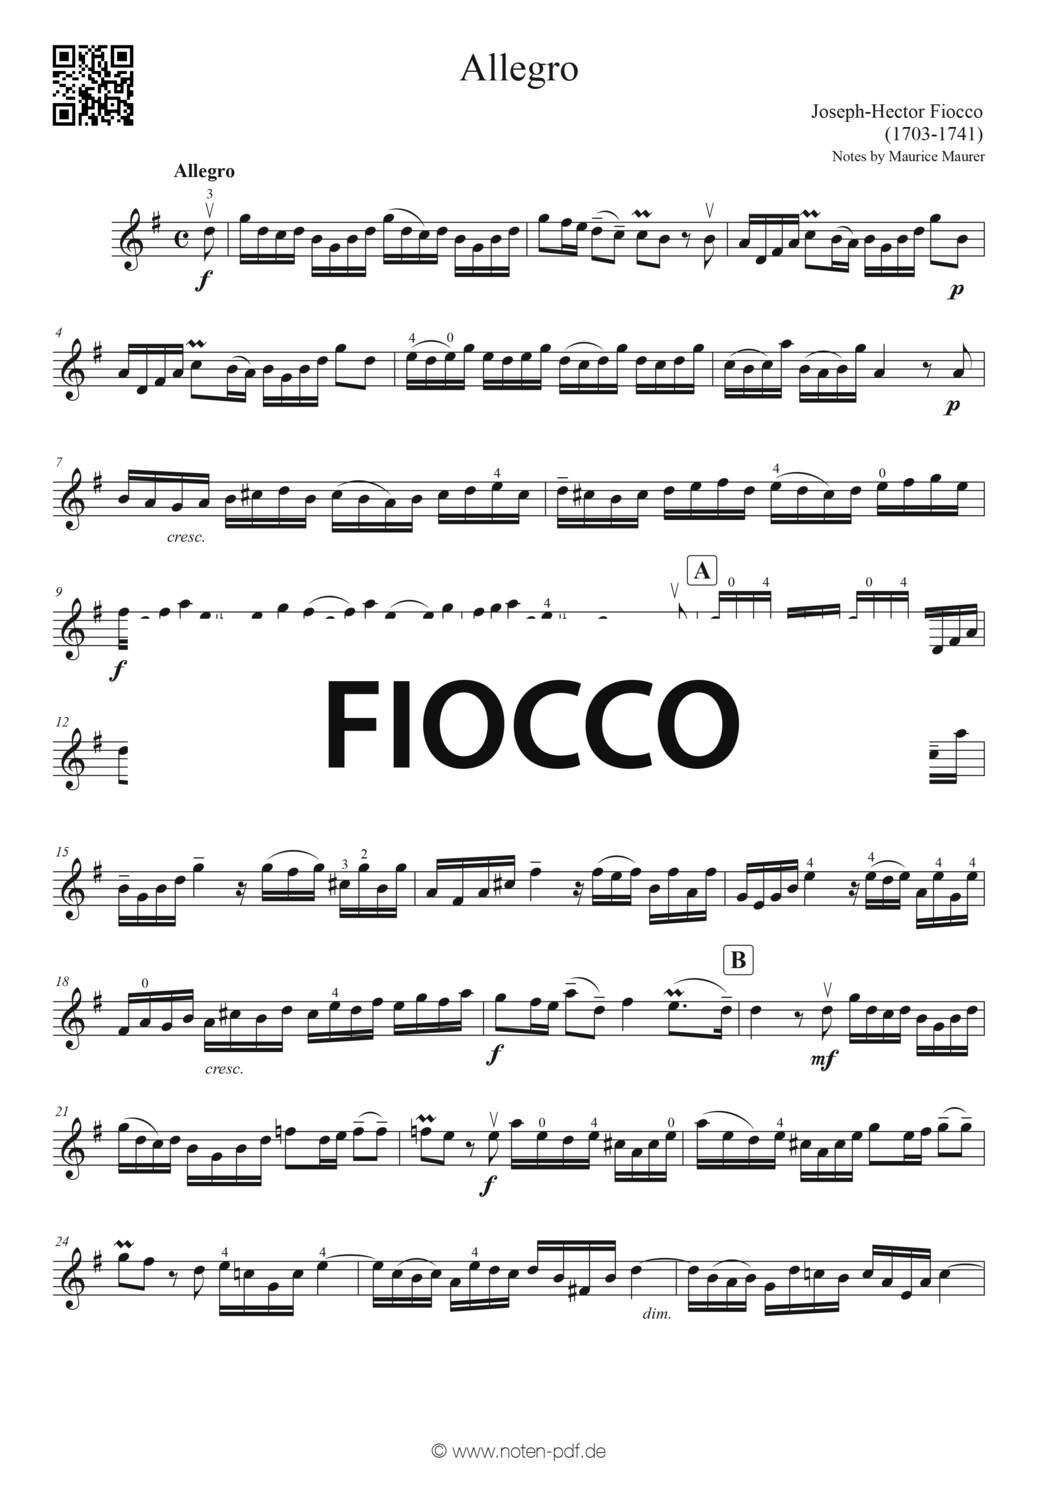 Fiocco: Allegro (Violin Sheet Music)